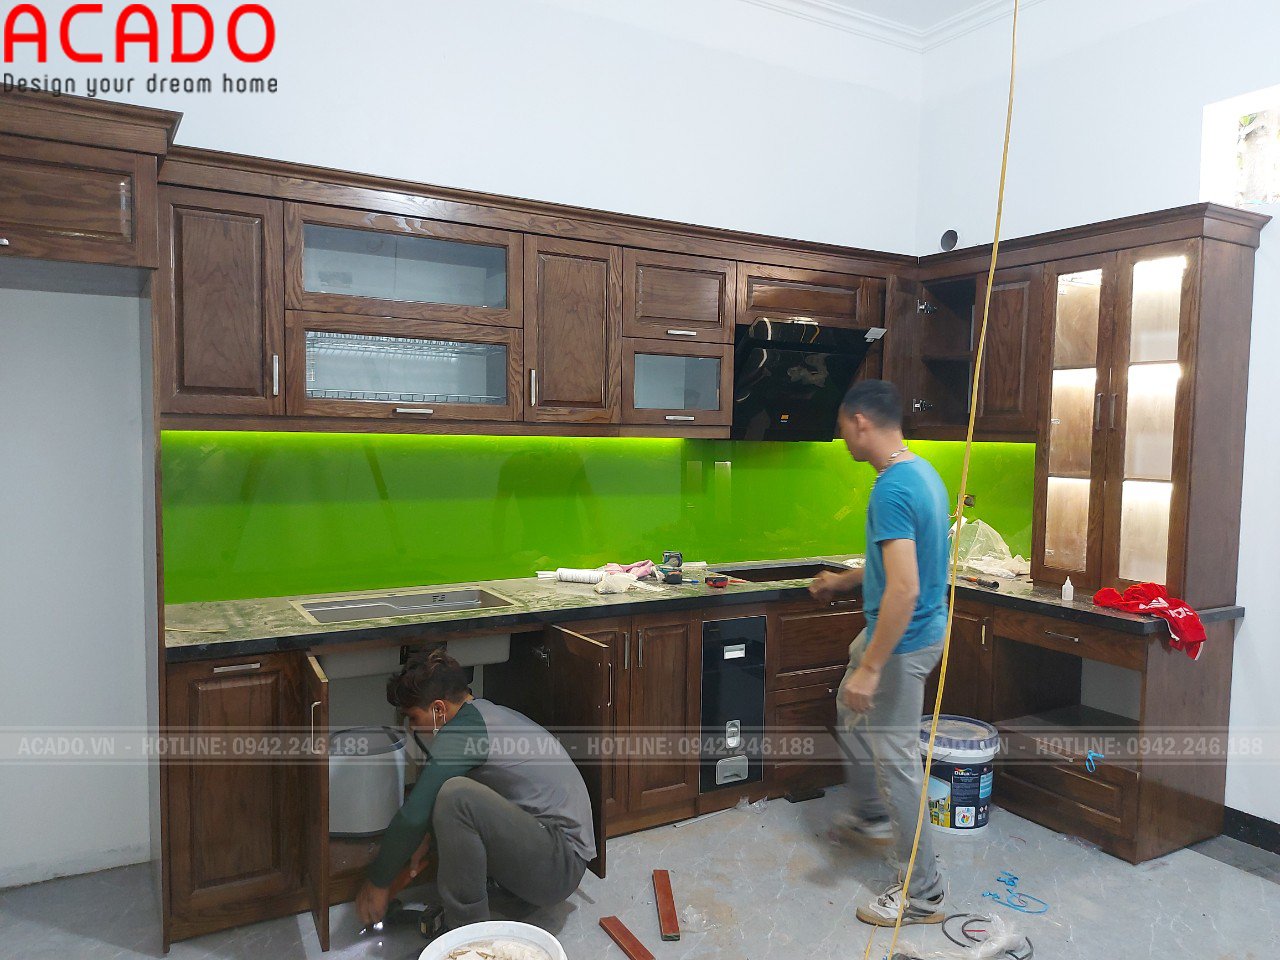 Kính bếp màu xanh tạo điểm nhấn và giữ vệ sinh tường cho không gian bếp của bạn